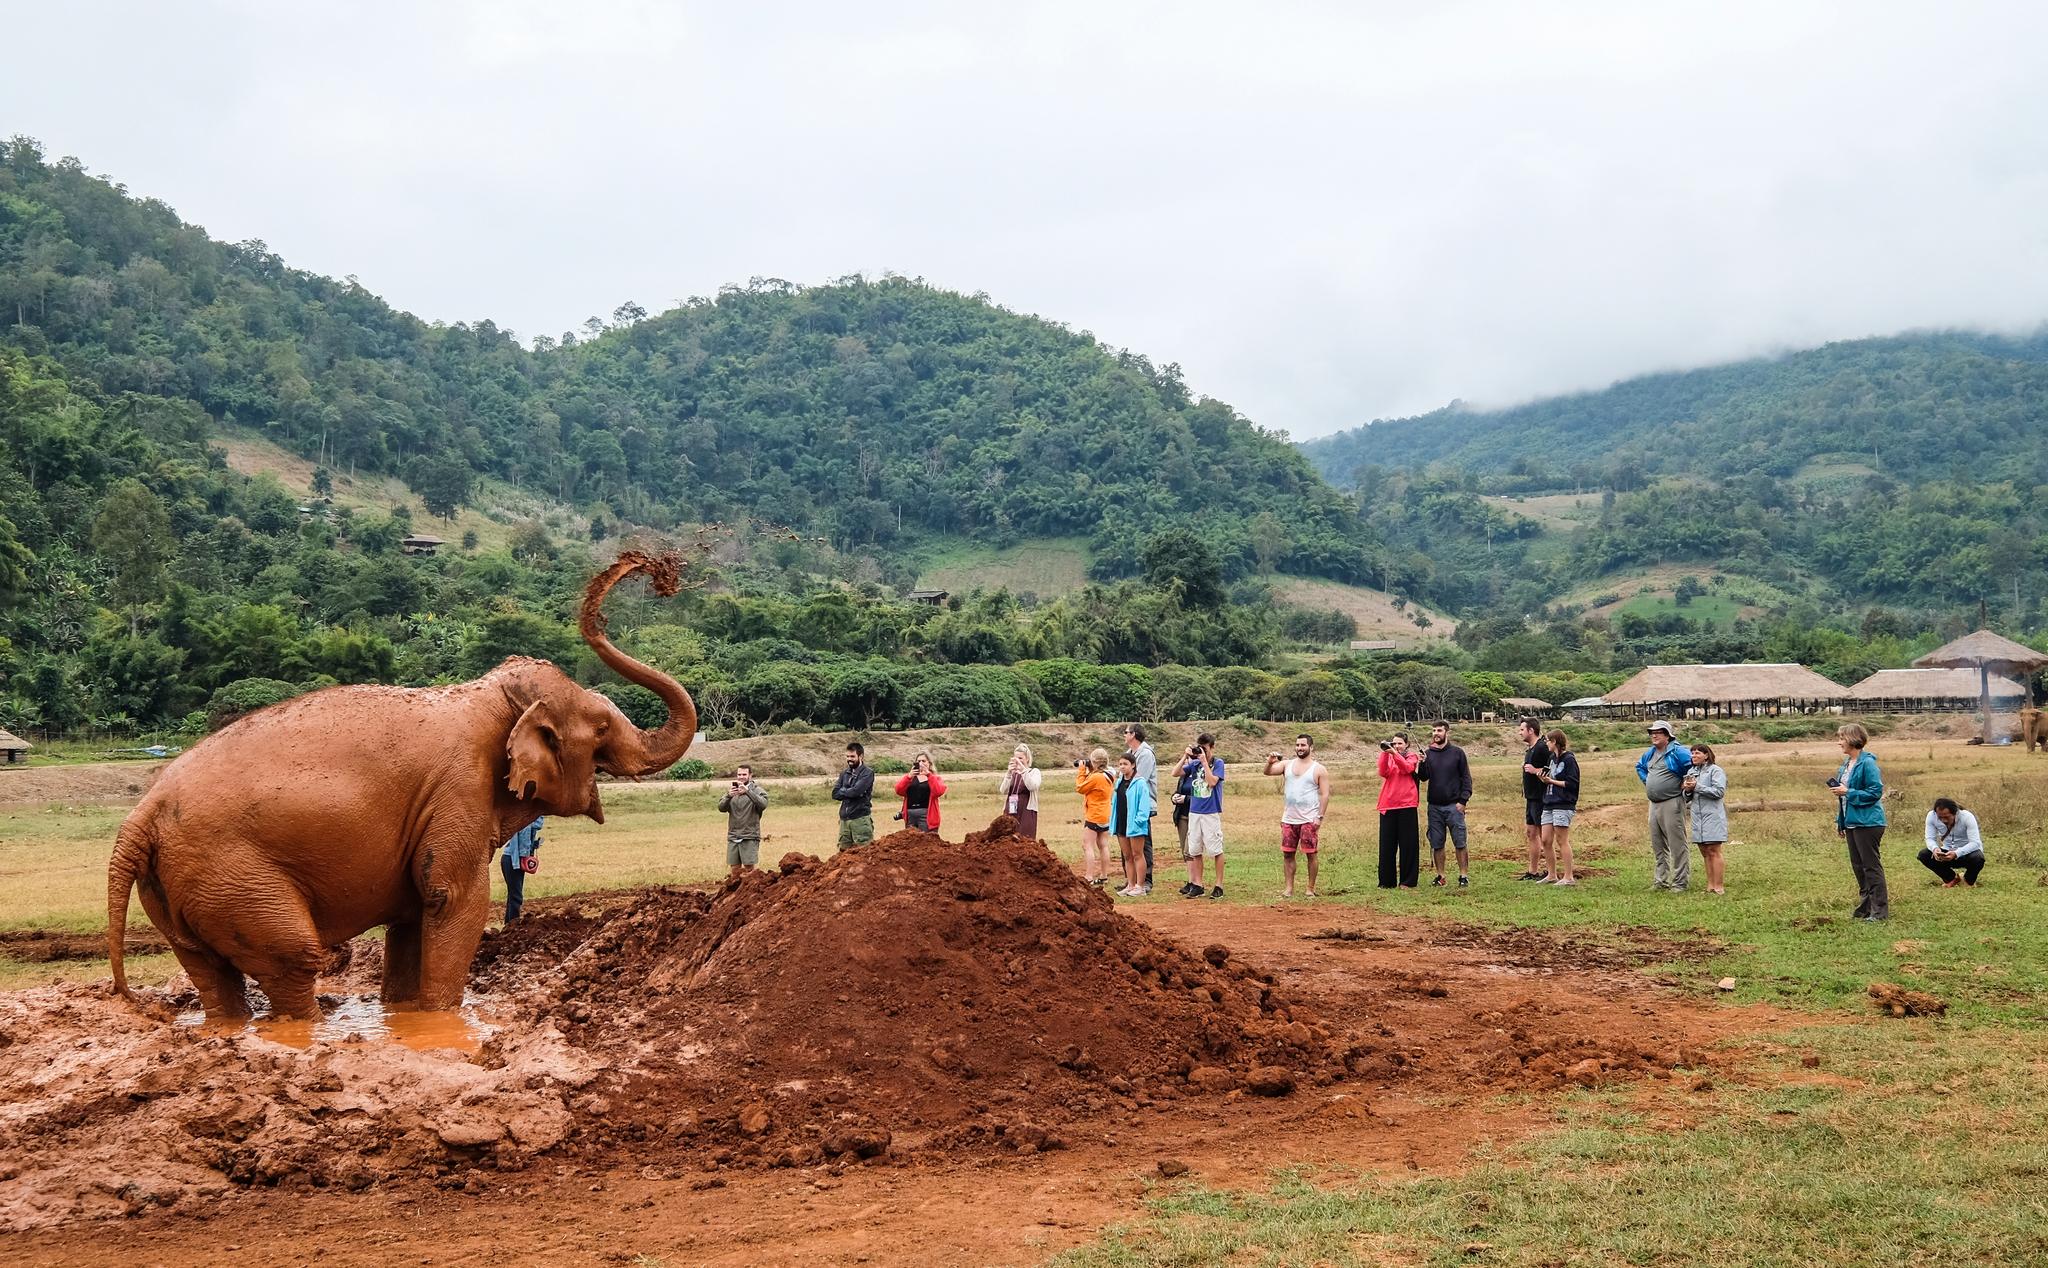 TURISME: Det er unektelig noe rart med å se mennesker så nære på dyrene, men uten inntekter fra turister hadde ikke steder som Elephant Nature Park eksistert.